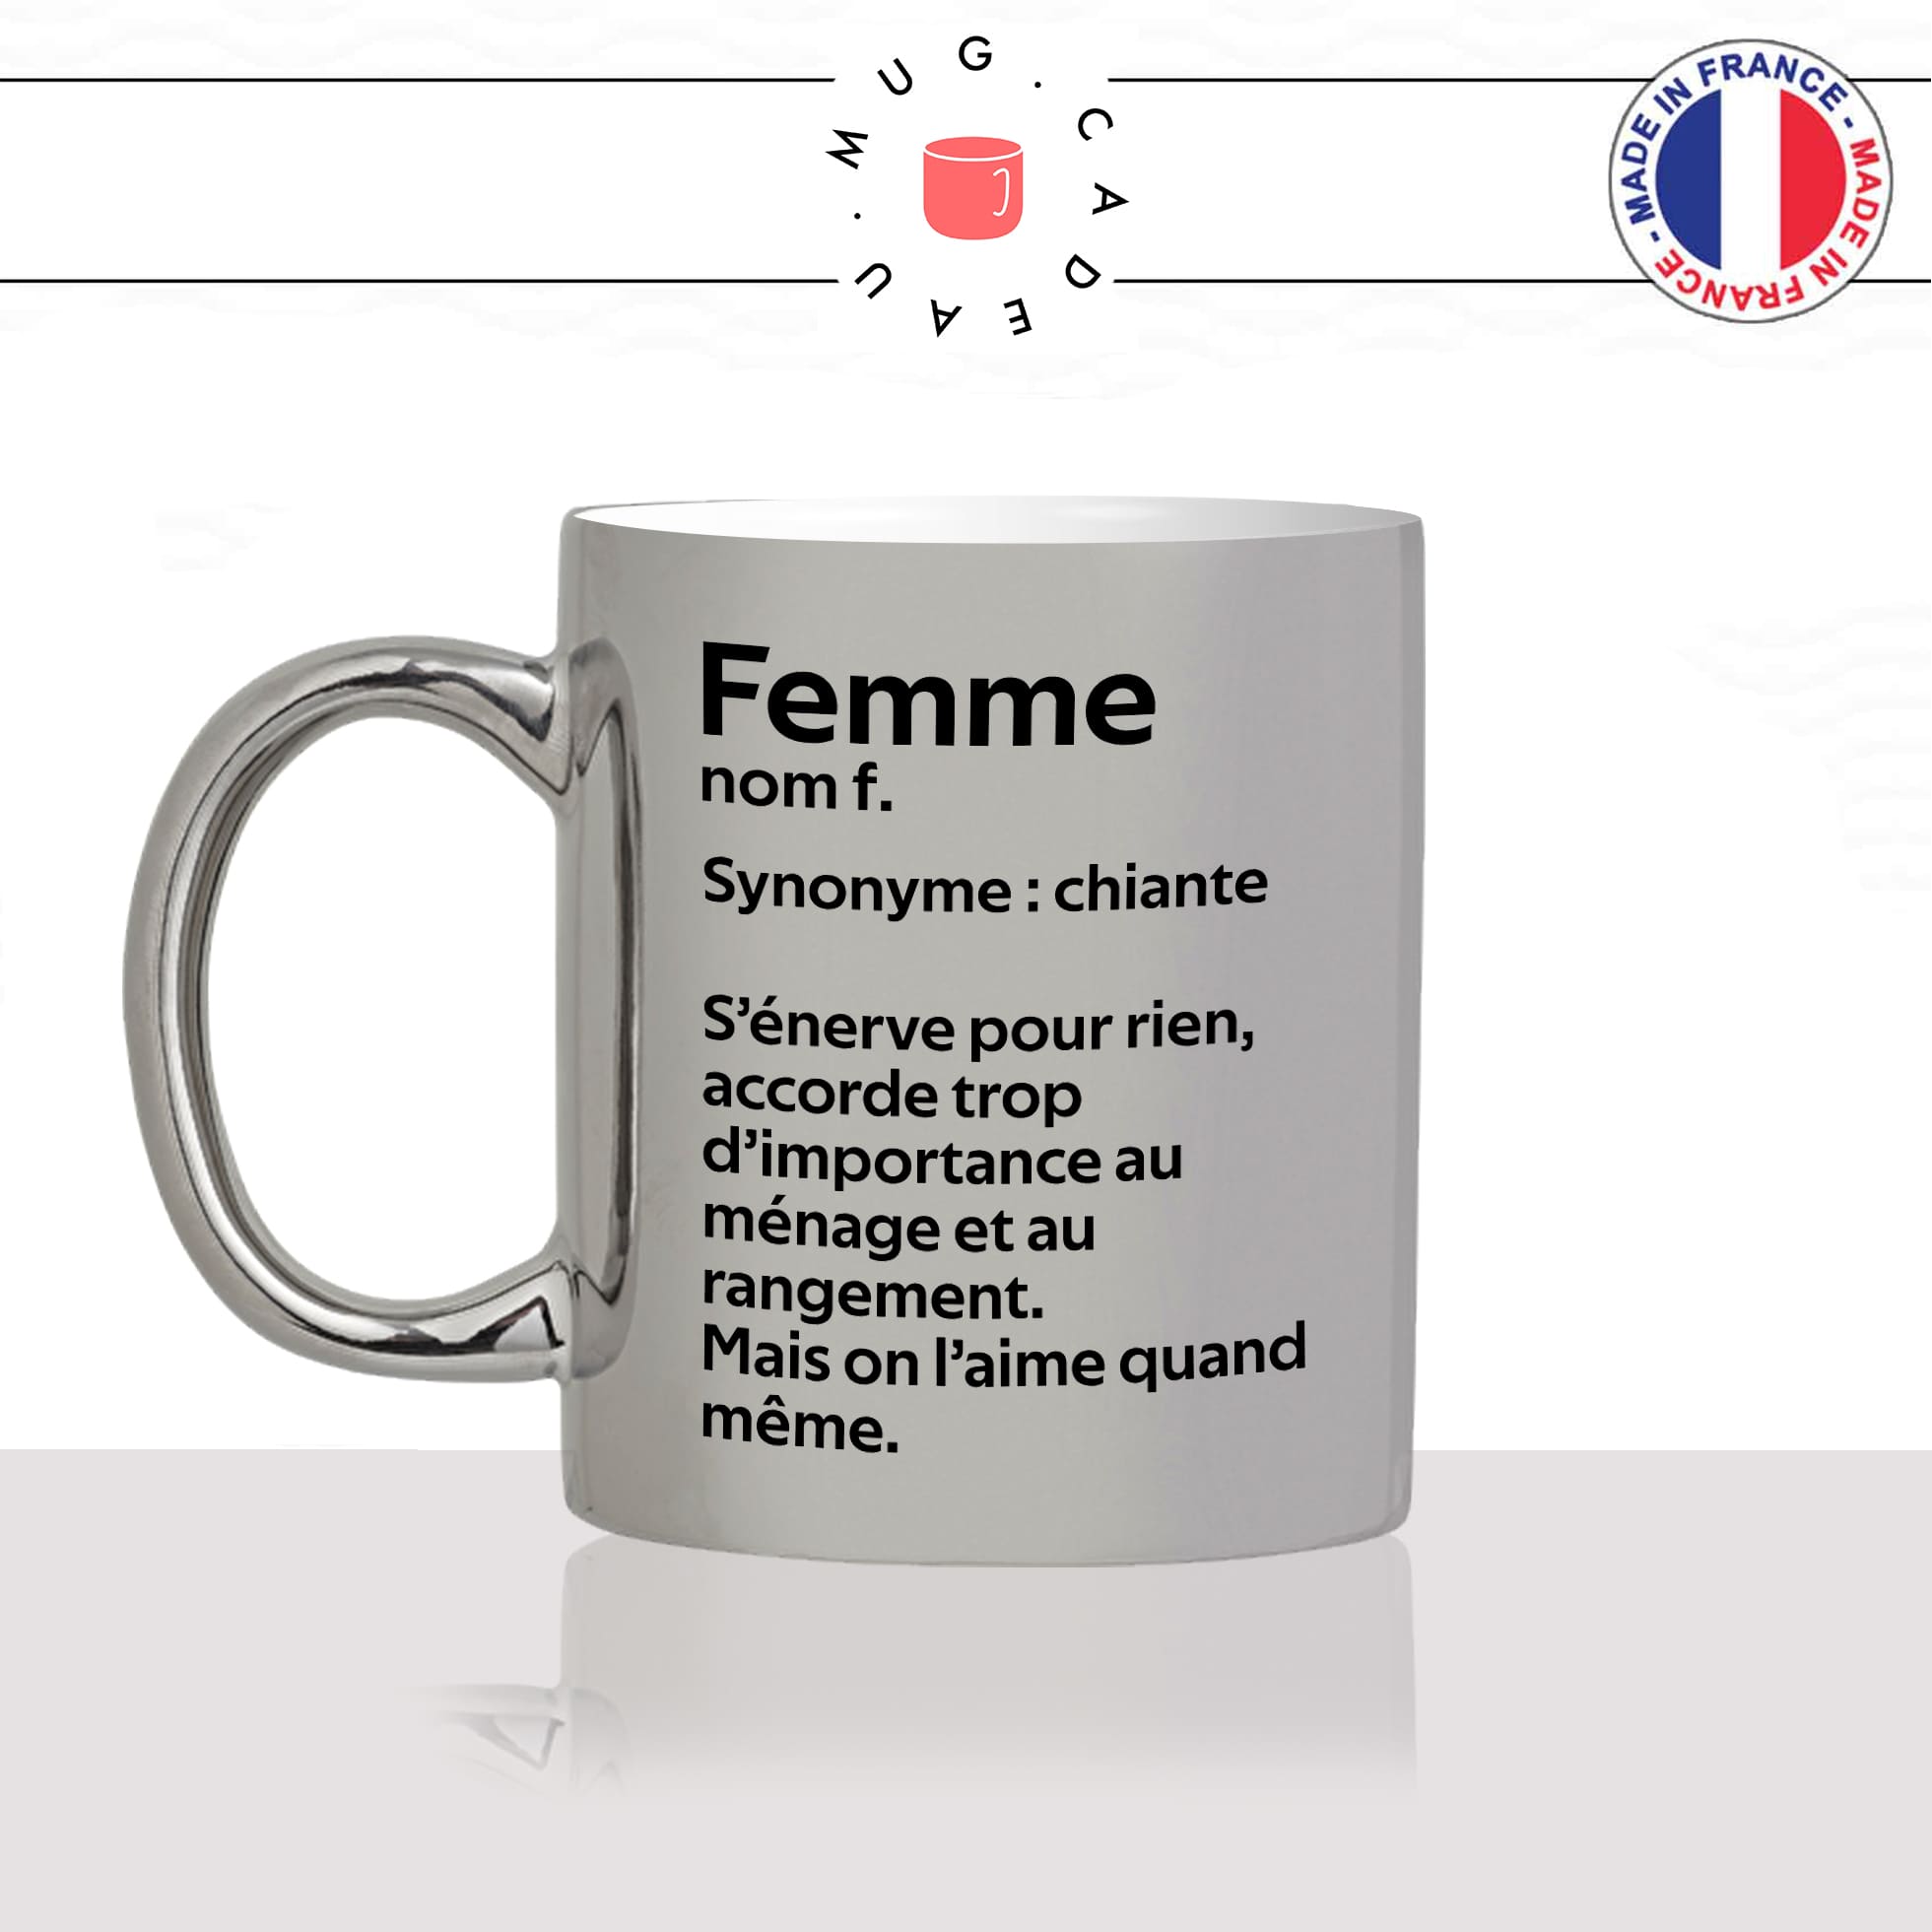 mug-tasse-argenté-argent-gris-silver-femme-définition-synonyme-chiante-ménage-on-laime-homme-couple-maman-humour-fun-idée-cadeau